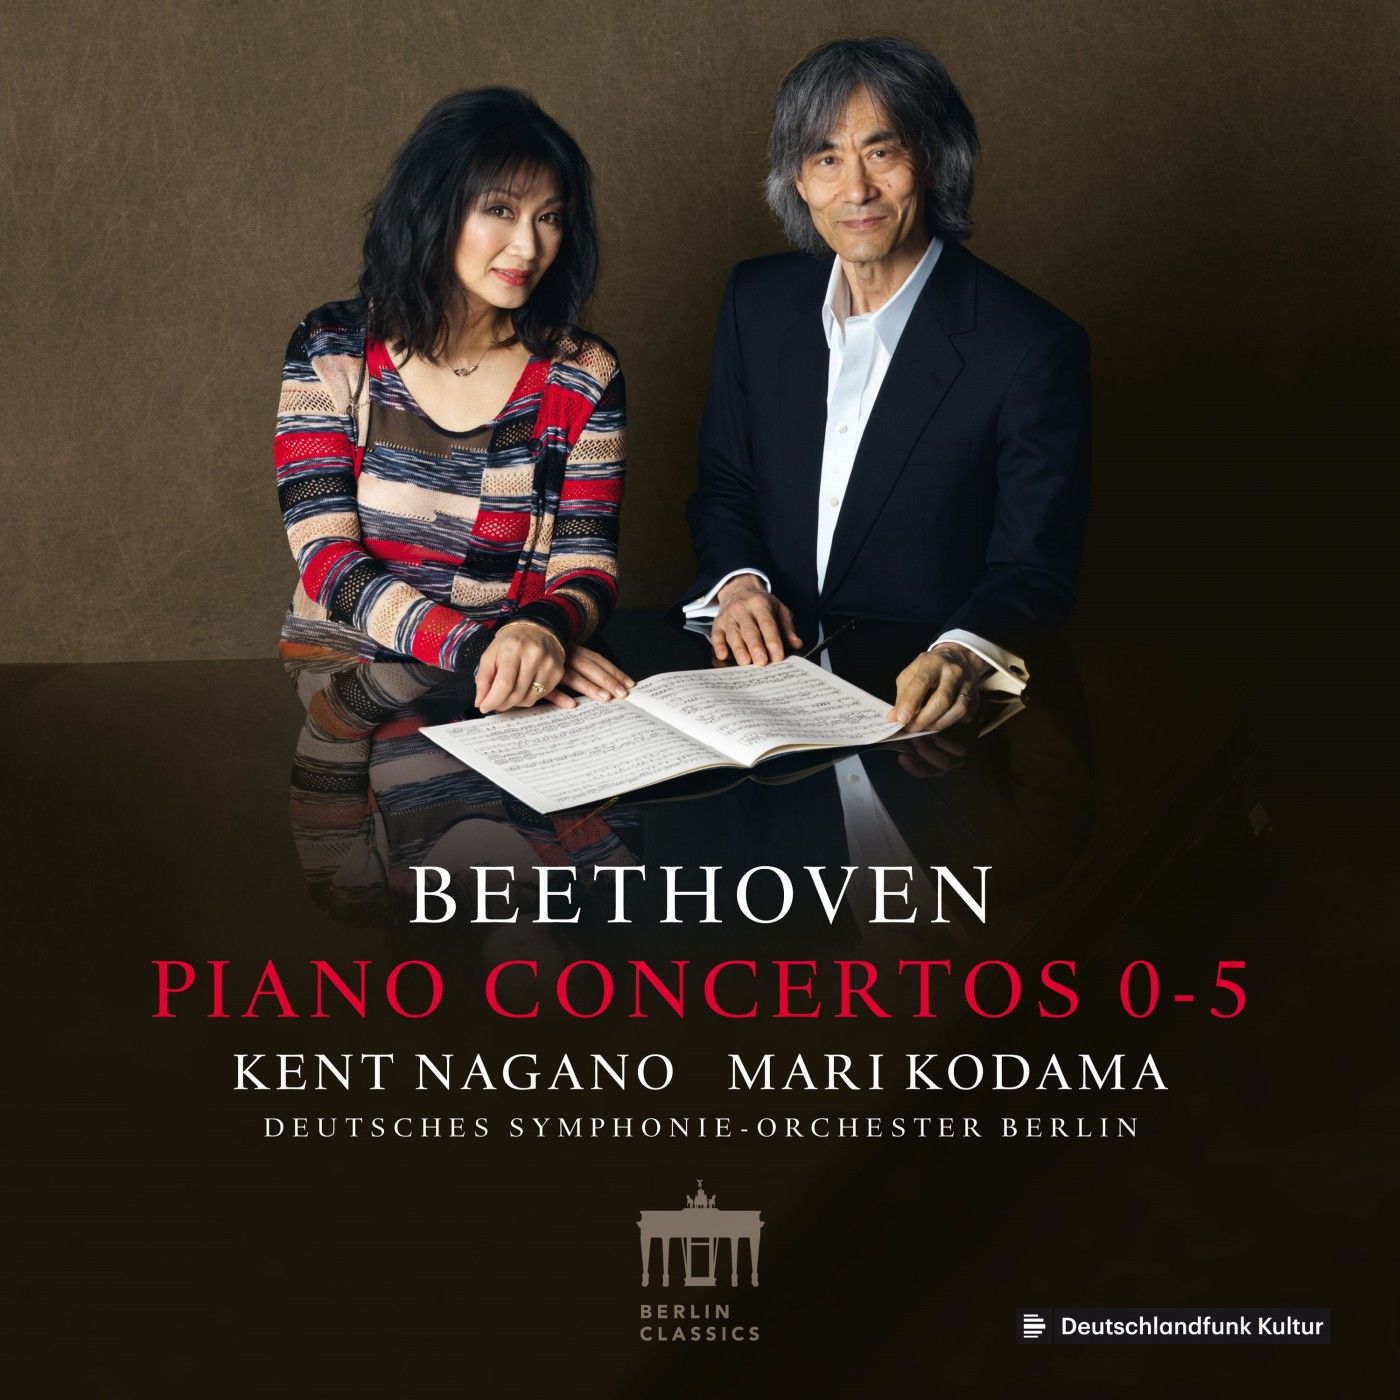 Mari Kodama, Deutsches Symphonie-Orchester Berlin & Kent Nagano – Beethoven: Piano Concertos 0-5 (2019) [FLAC 24bit/88,2kHz]